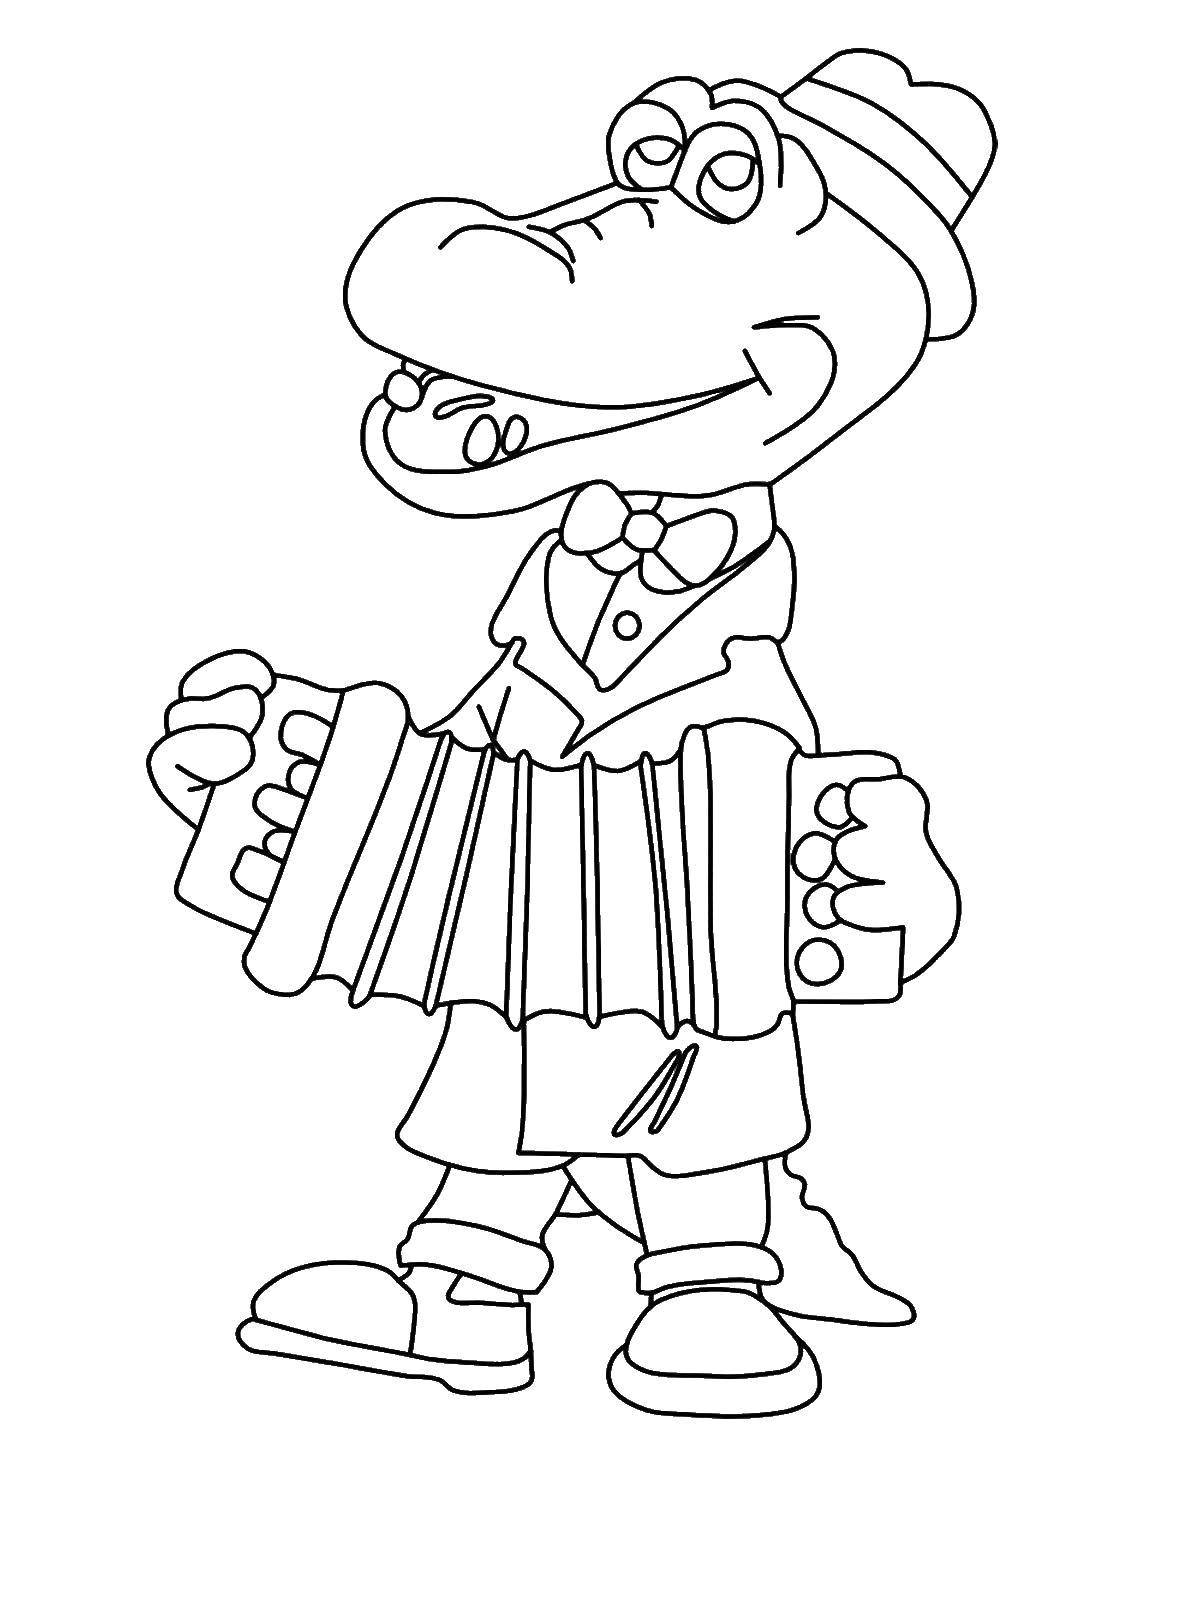 Coloring Crocodile Gena. Category Cartoon character. Tags:  Cartoon character, Cheburashka and Crocodile Gena.